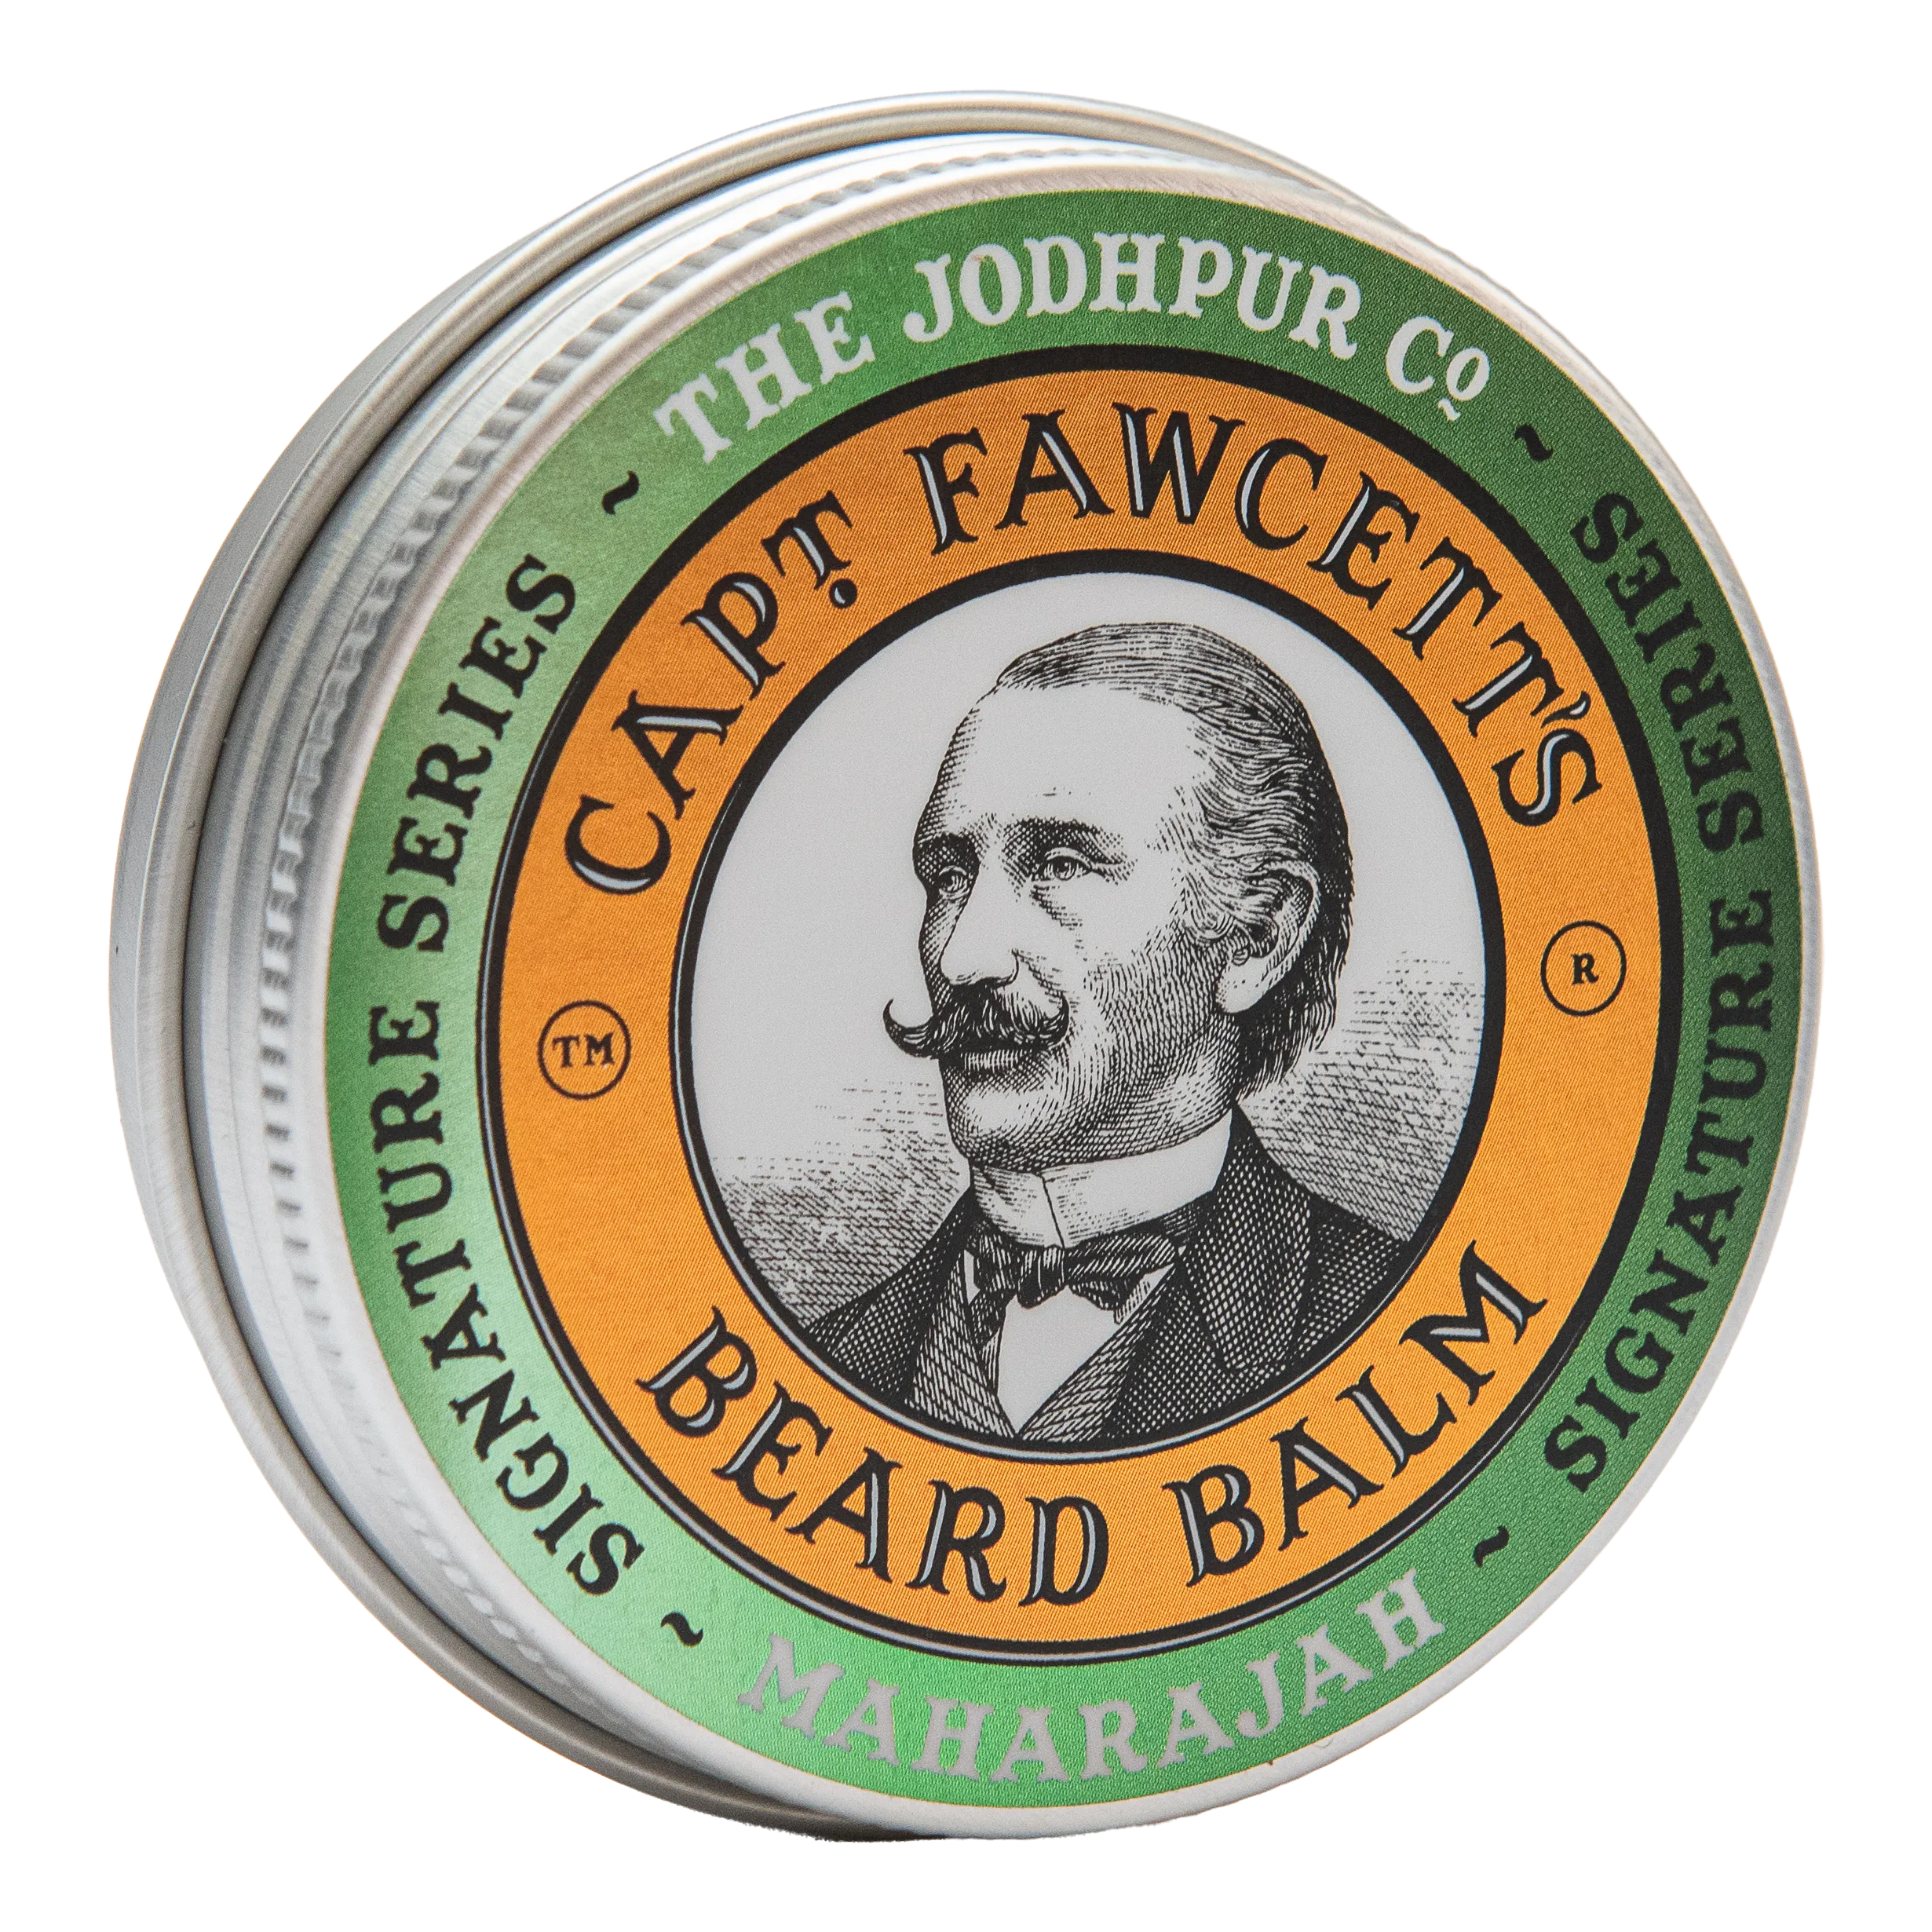 Captain Fawcett's Maharajah Beard Balm 